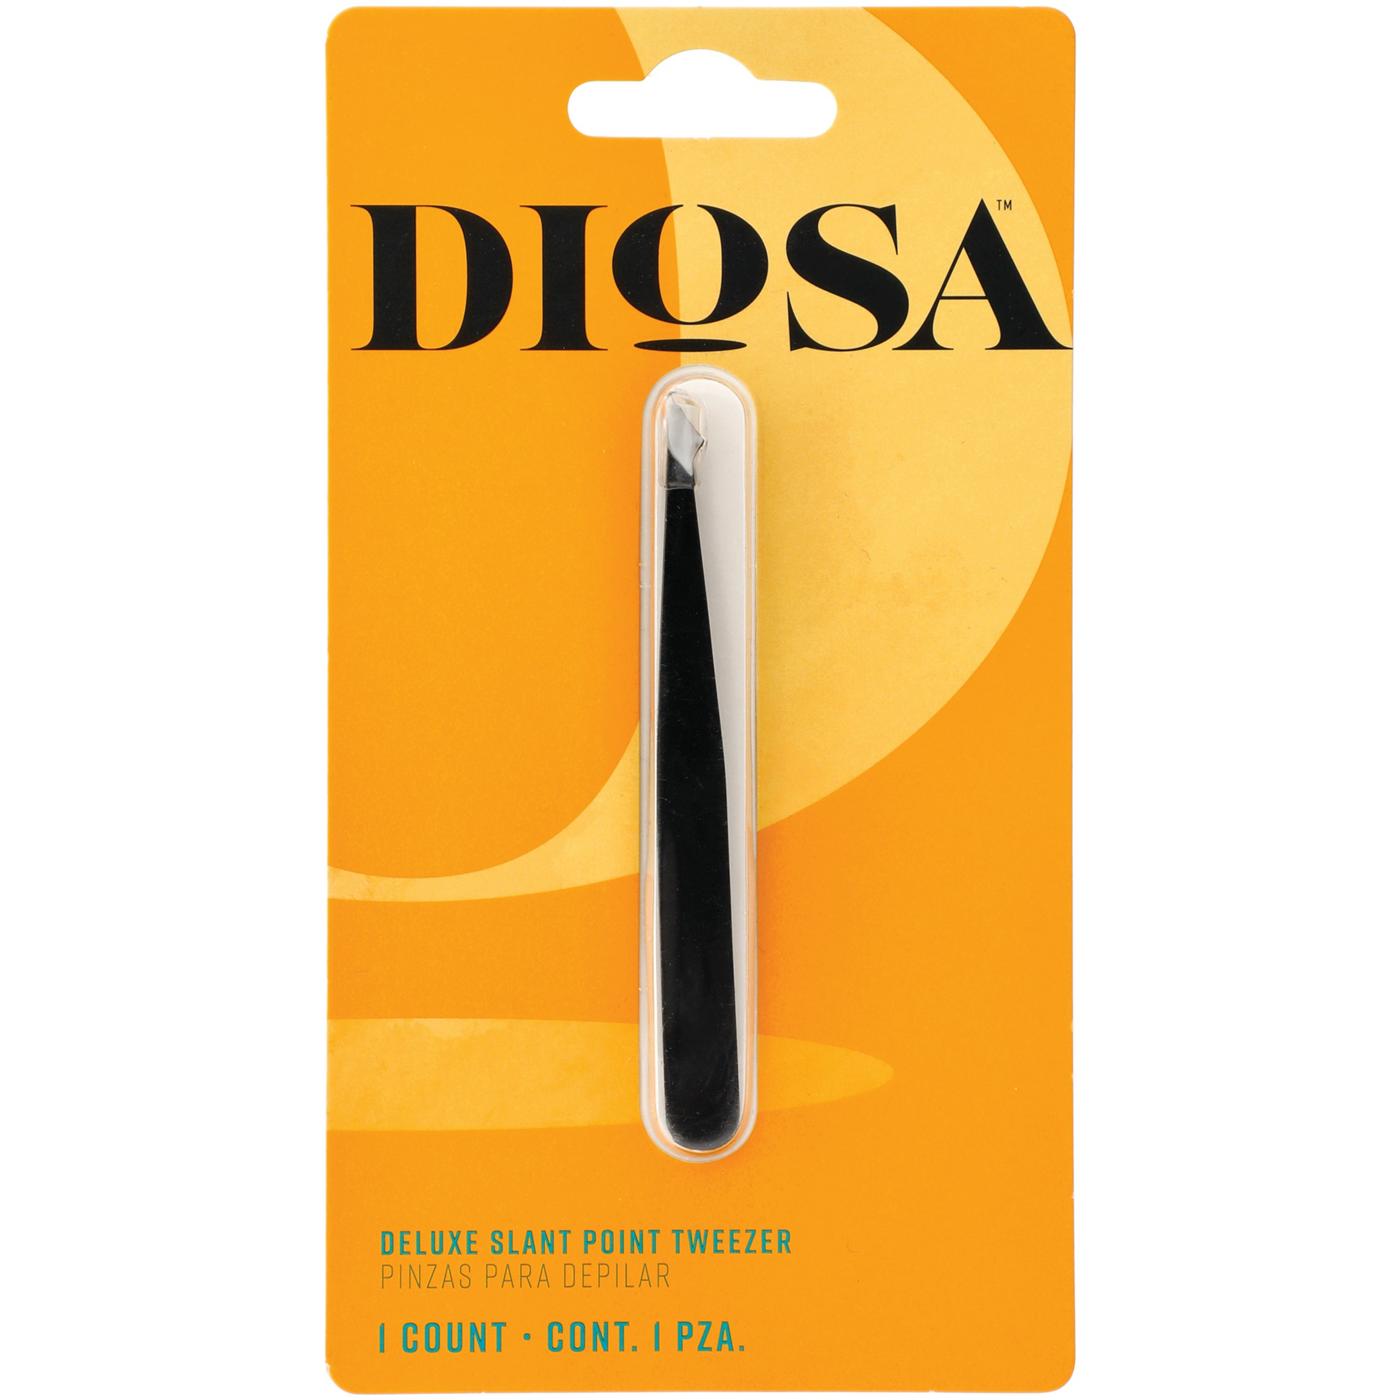 Diosa Deluxe Slant Point Tweezers; image 1 of 3